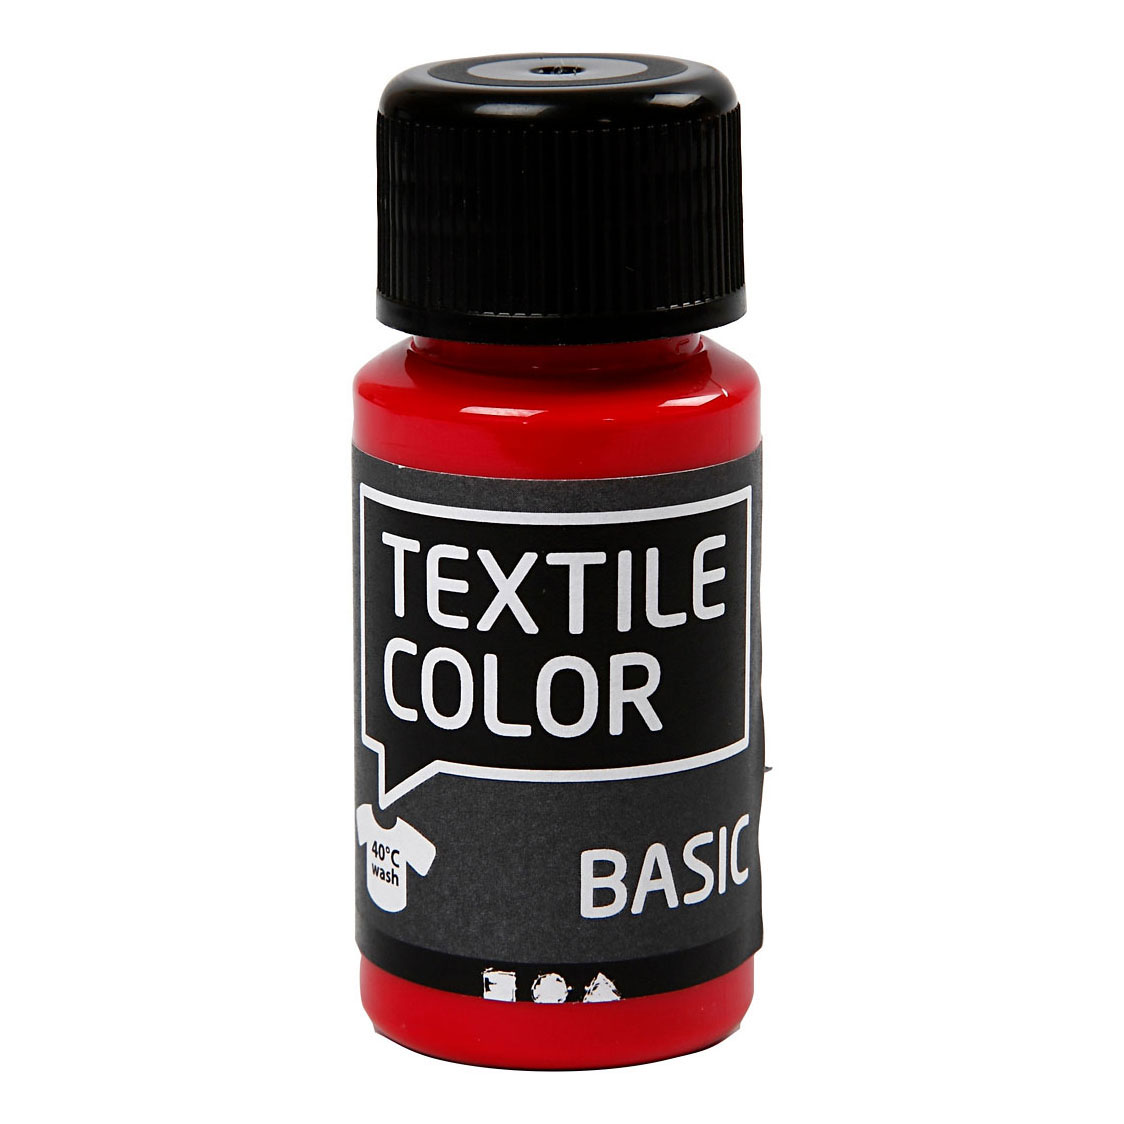 Textile Color Semi-dekkende Textielverf - Primair Rood, 50ml